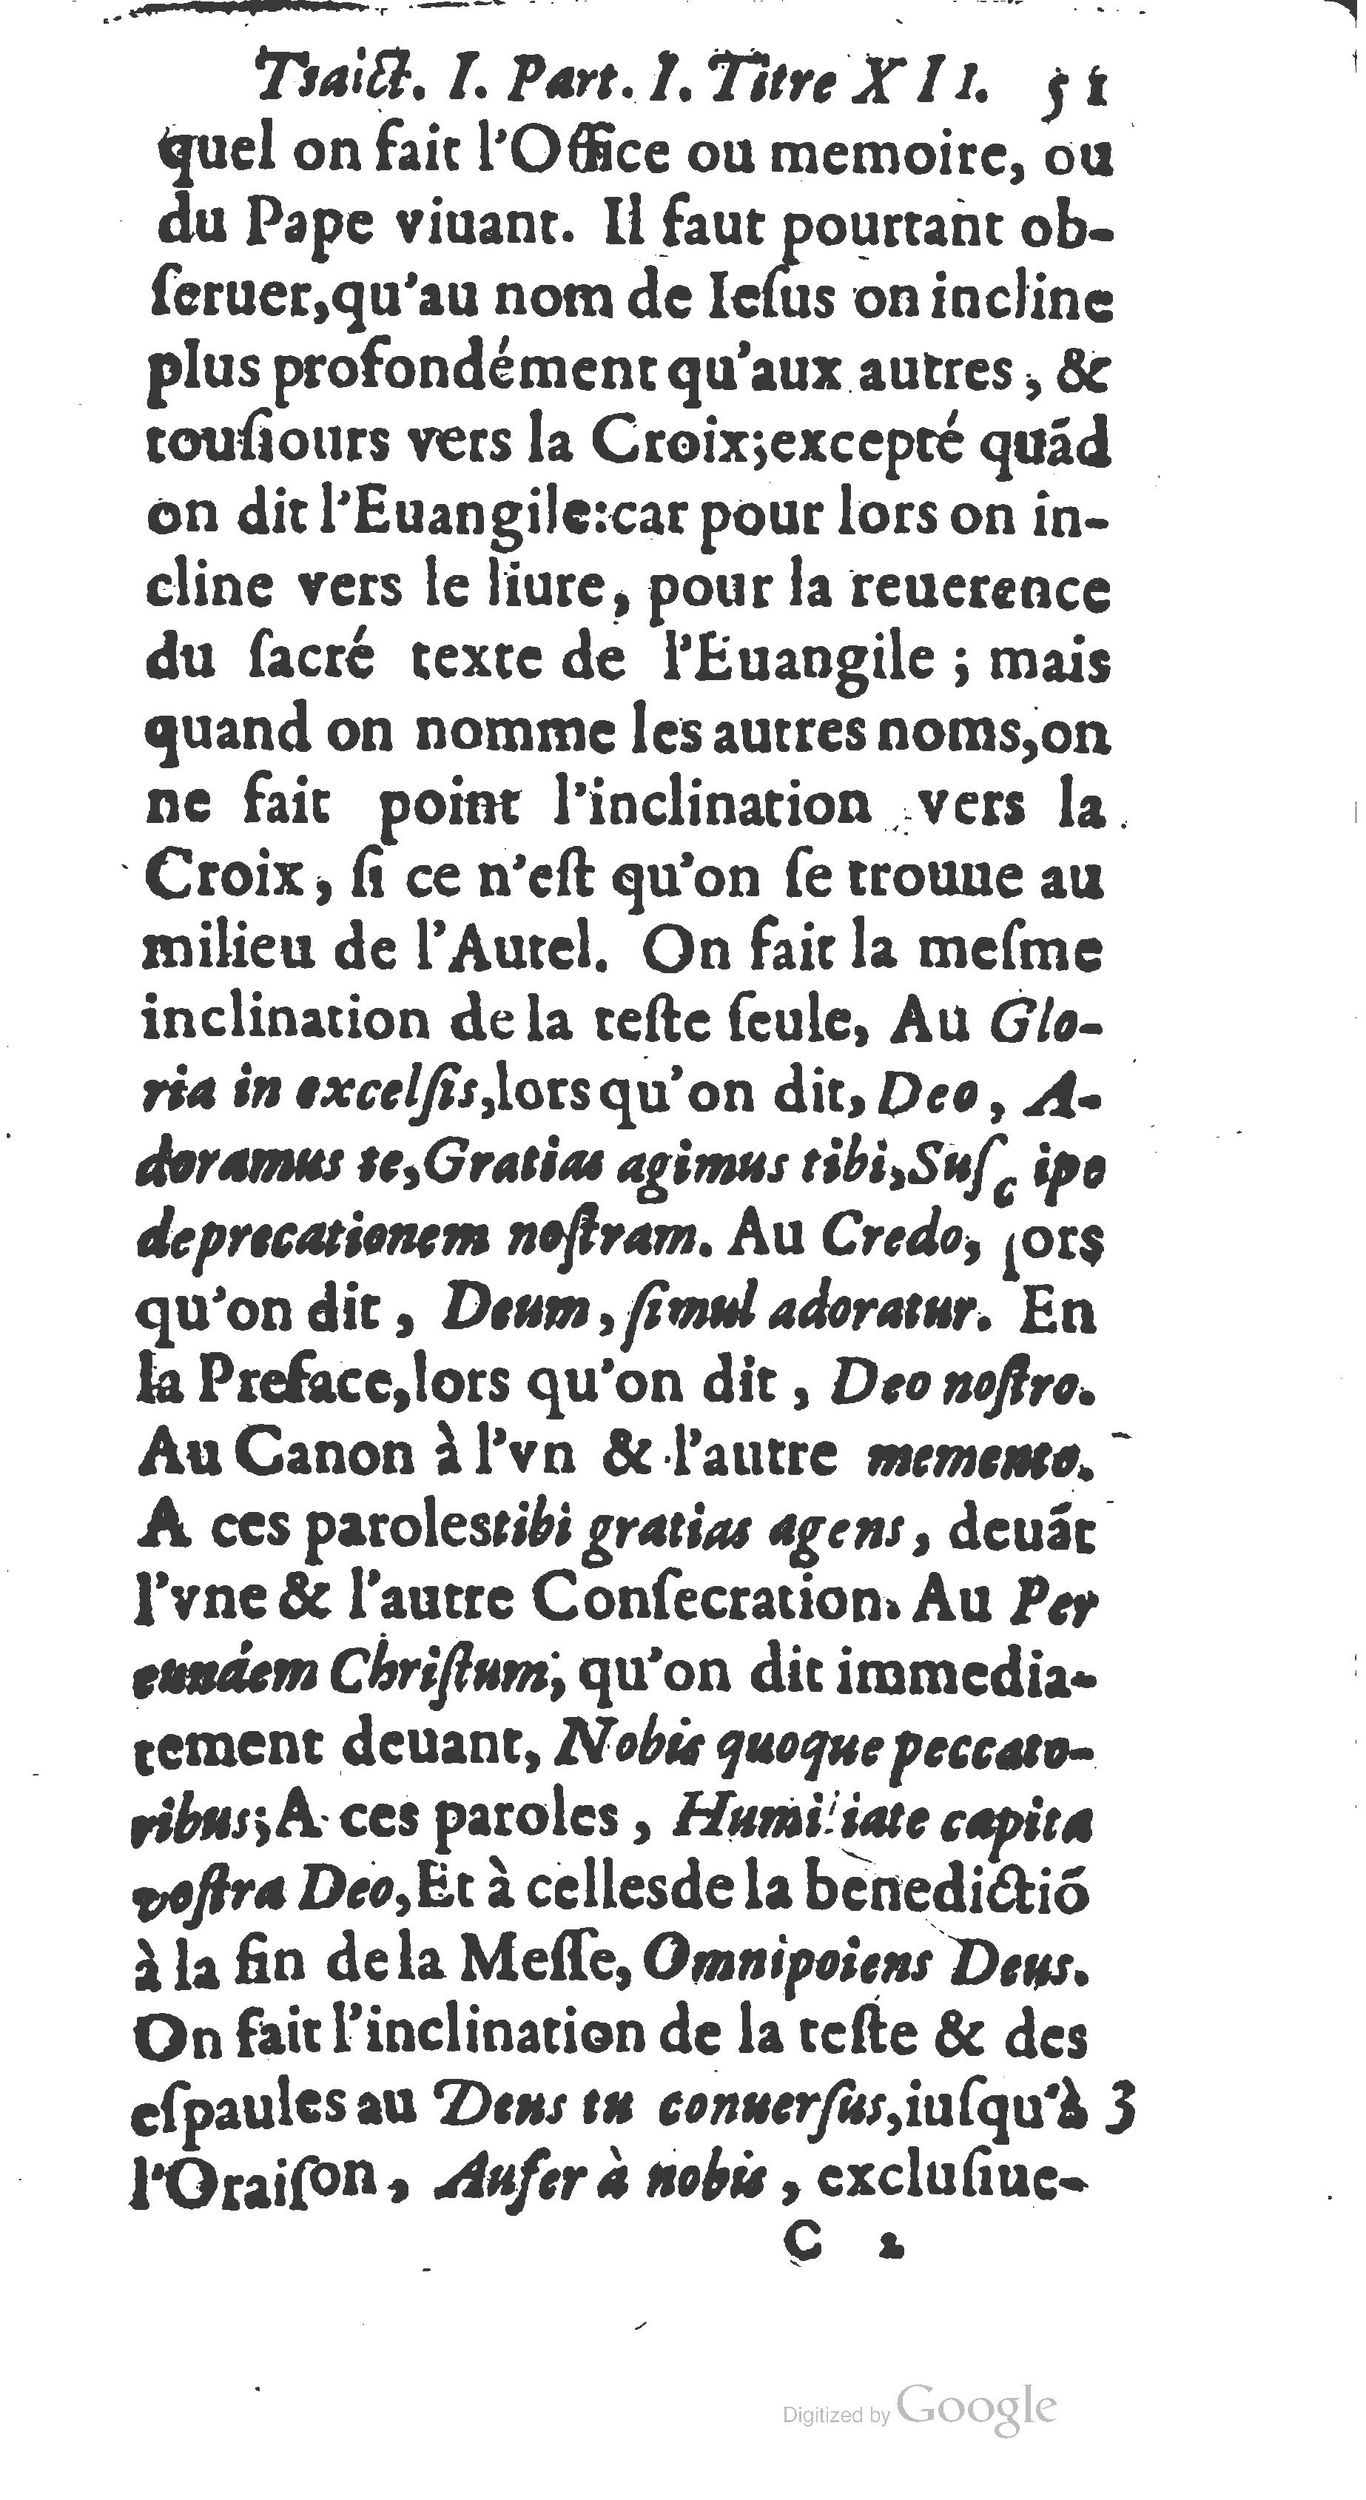 1651 Abrégé du trésor des cérémonies ecclésiastiques Guillermet_BM Lyon_Page_070.jpg